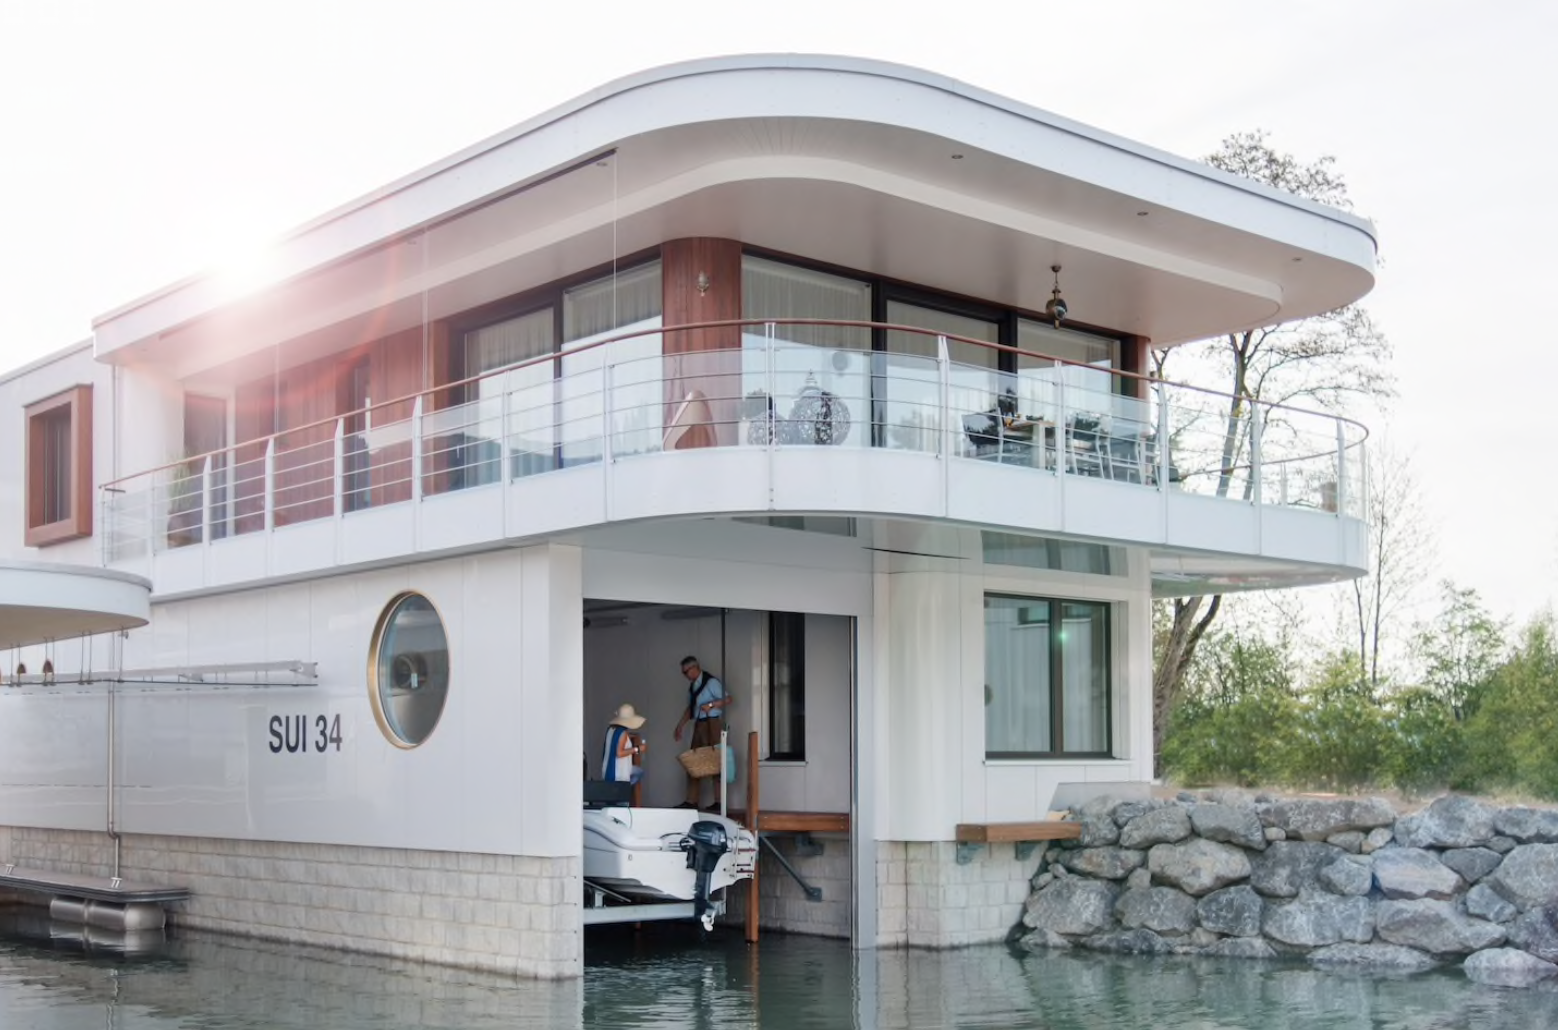 Delta Privé Collection Villas on Lake Thun in Gwatt, Switzerland - Airbnb rental